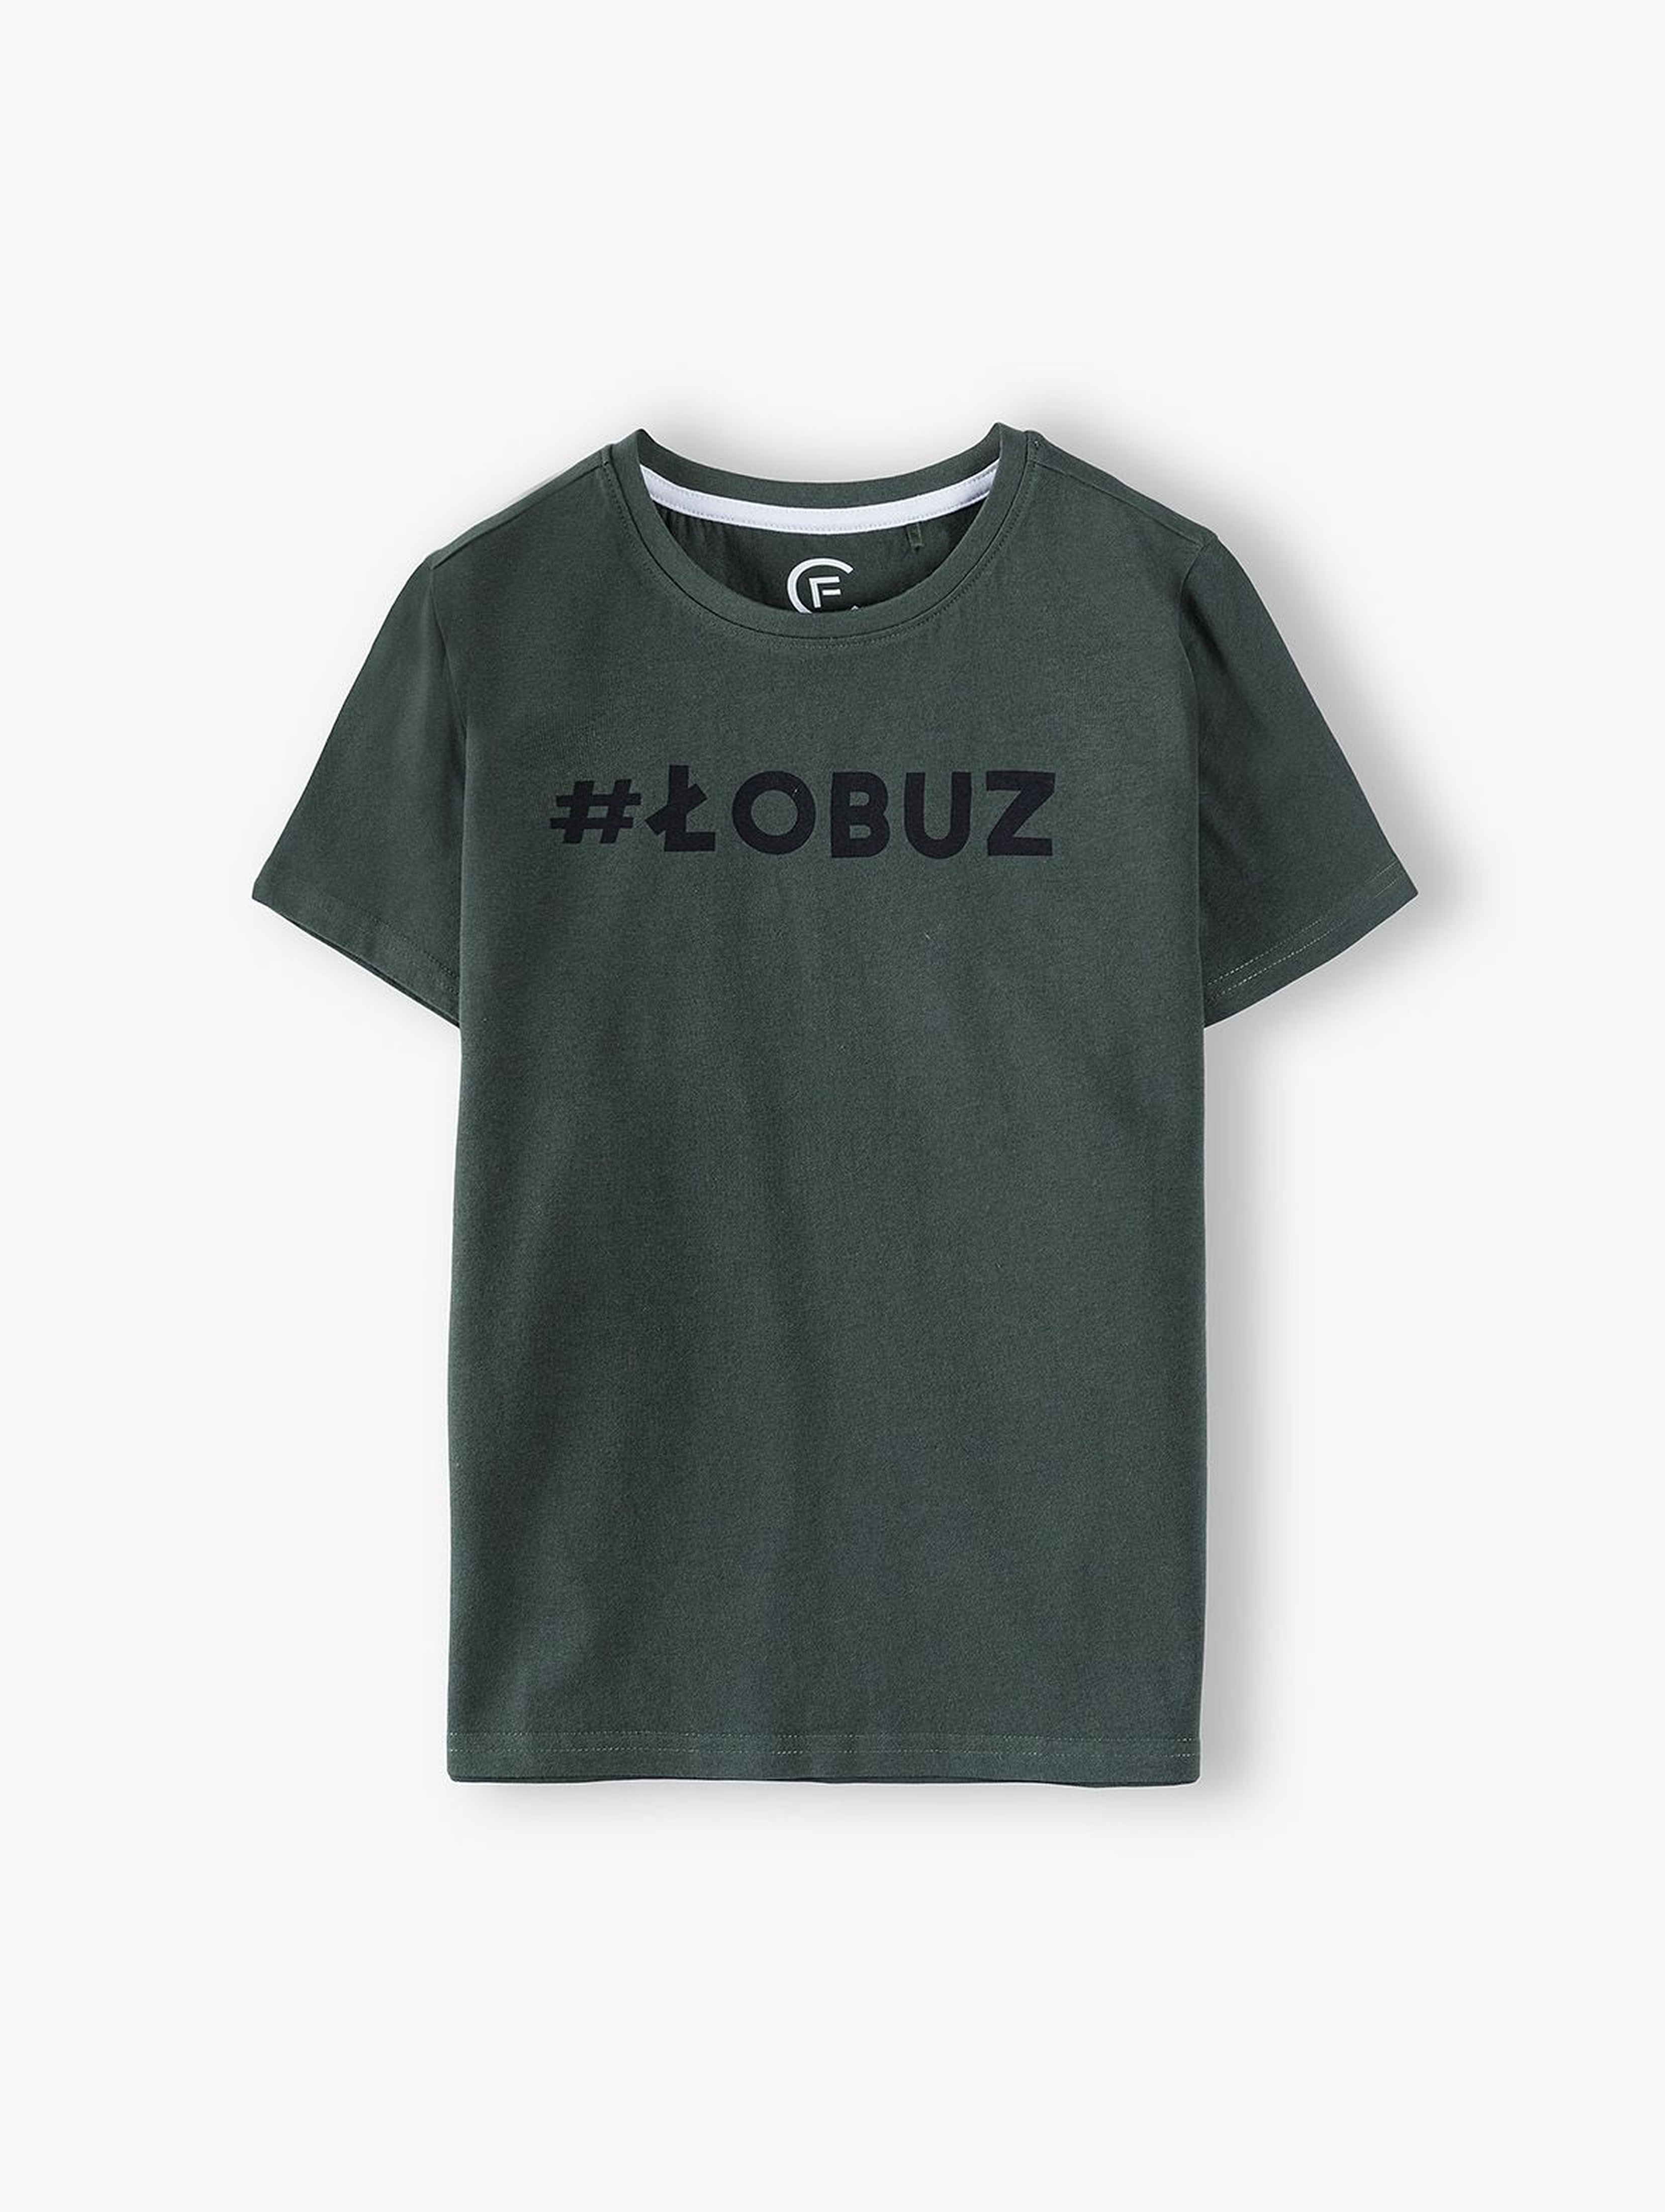 Bawełniany t-shirt chłopięcy-#Łobuz